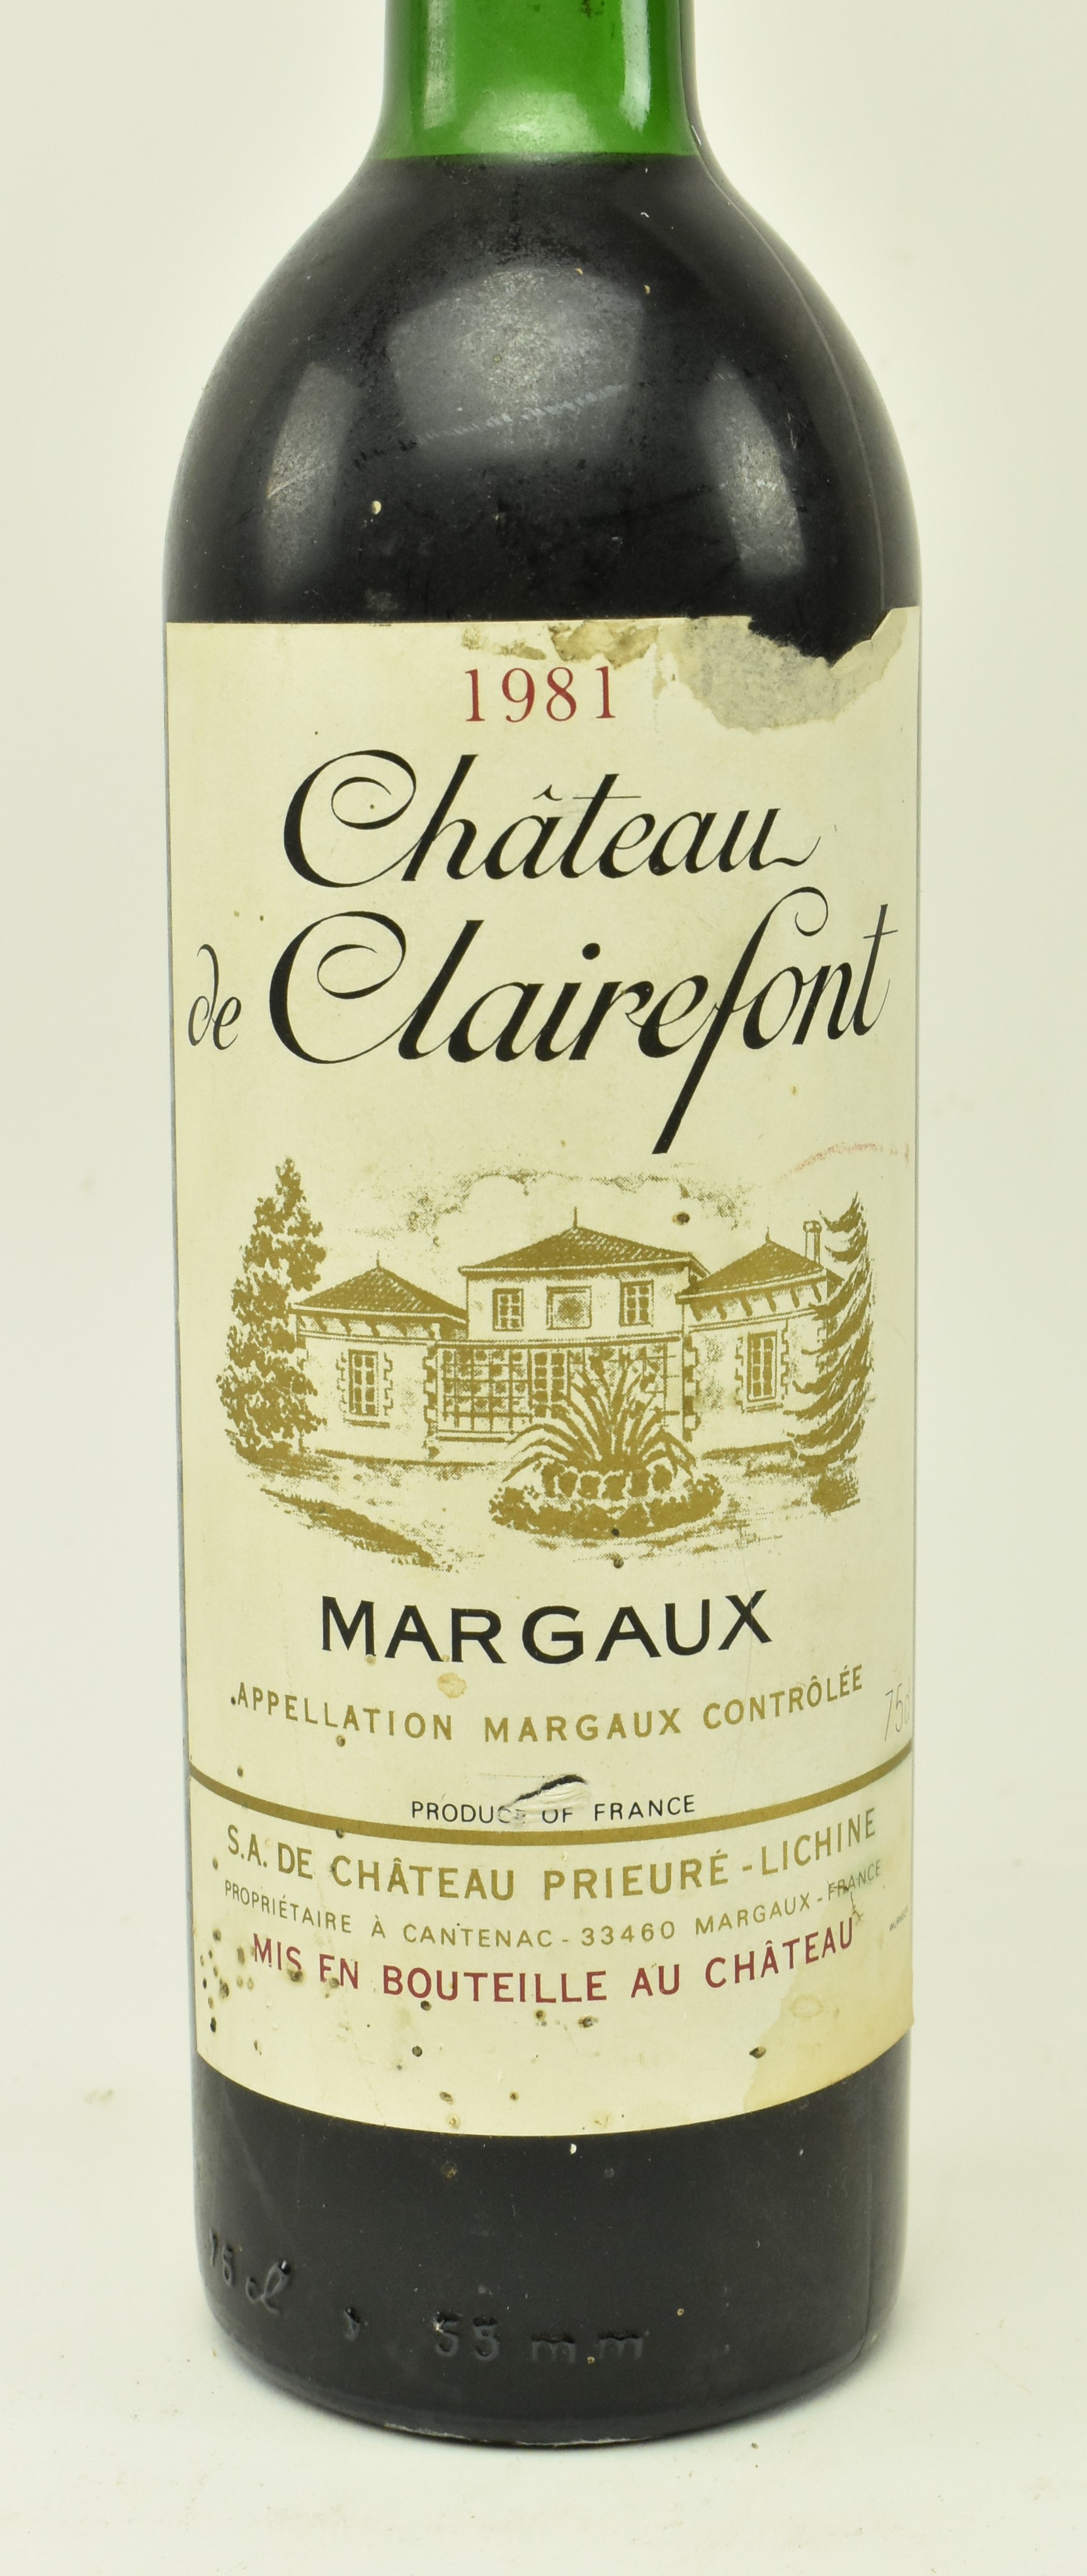 1981 CHATEAU DE CLAIREFONT MARGAUX 750ml BOTTLE - Image 4 of 6